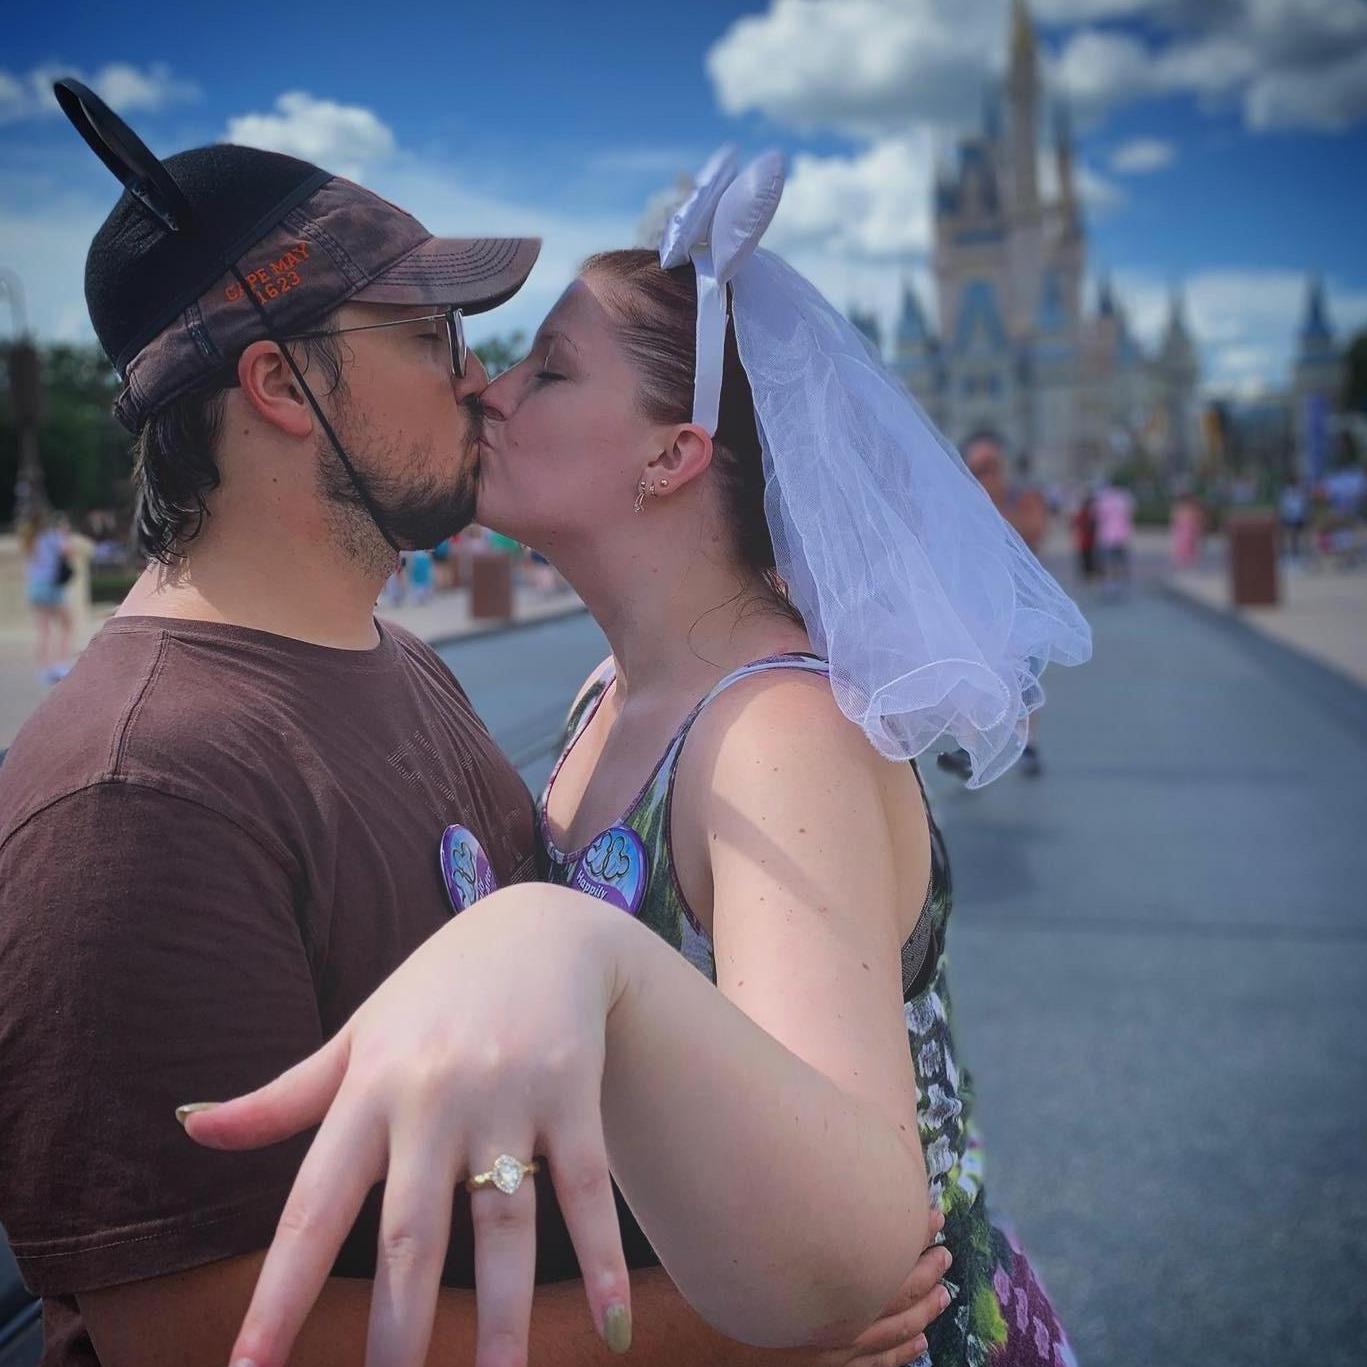 Engaged at Disney, July 2019.